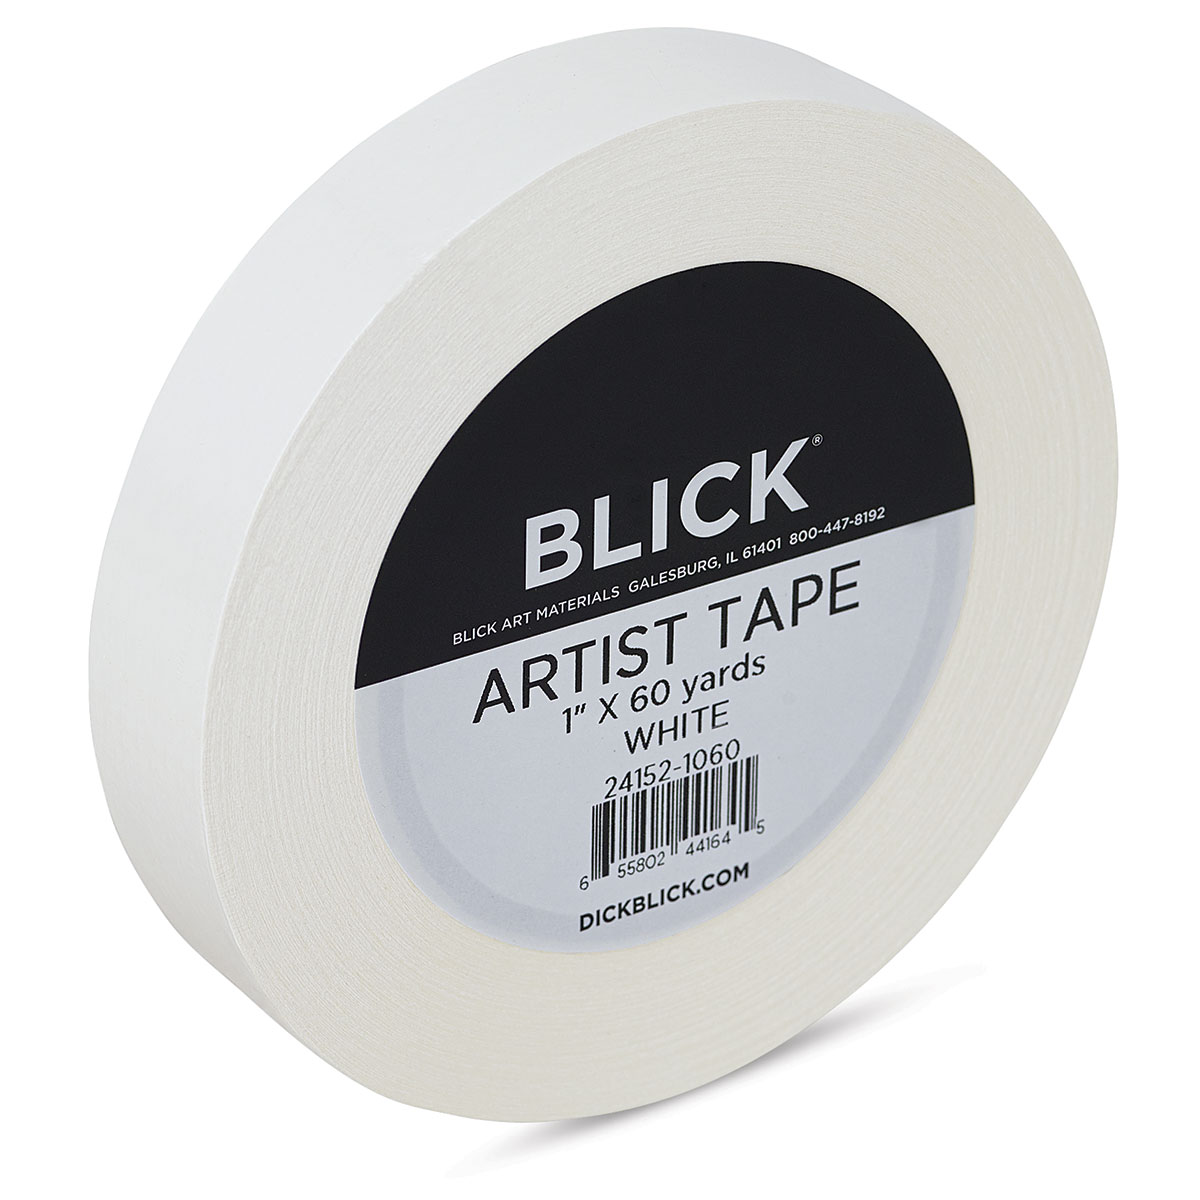 Blick Artist Tape - White, 1 x 60 yds